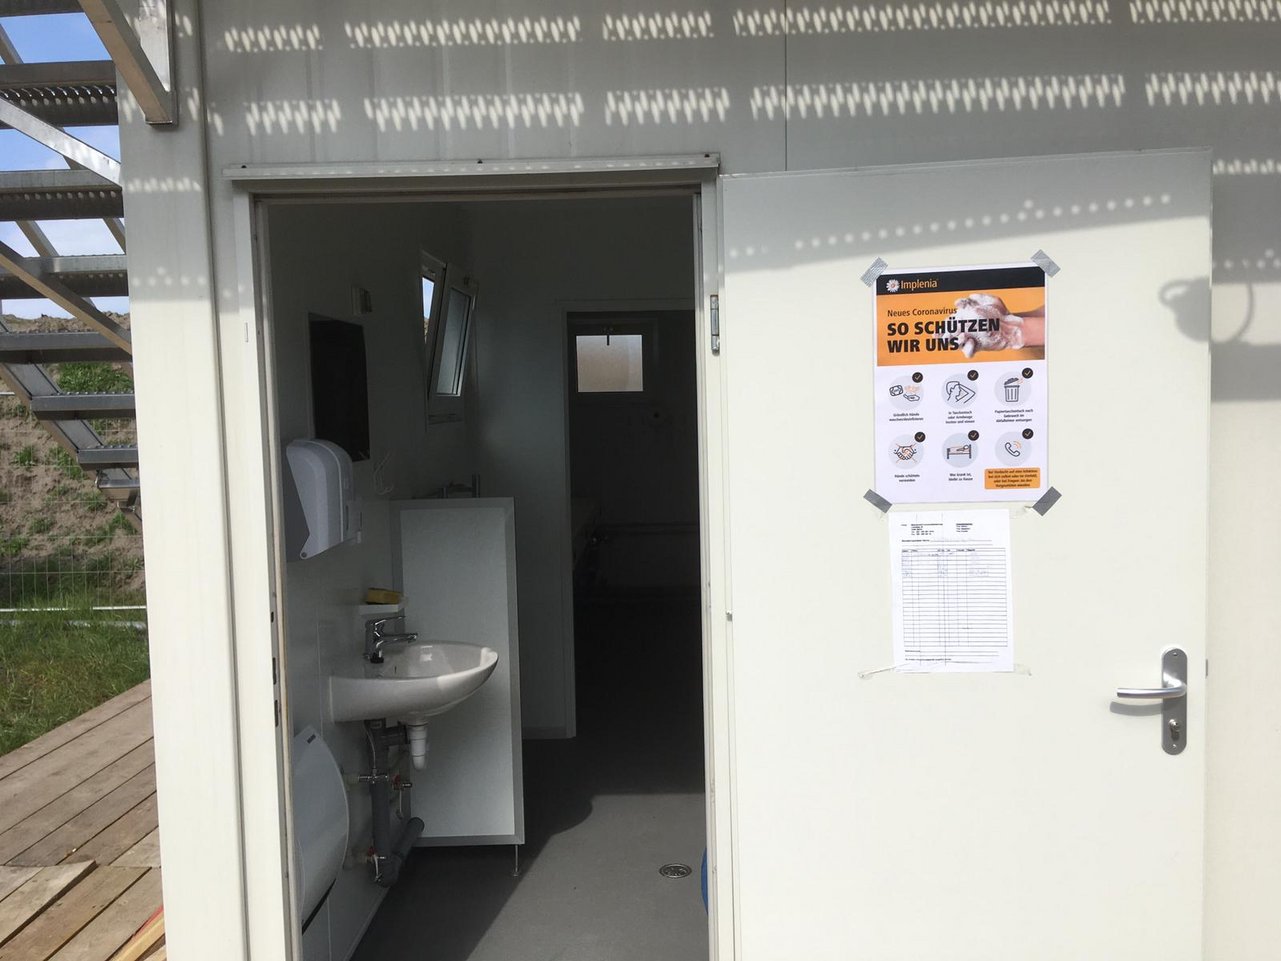 "Informação e higiene: Os cartazes informativos são também pendurados nas instalações sanitárias "